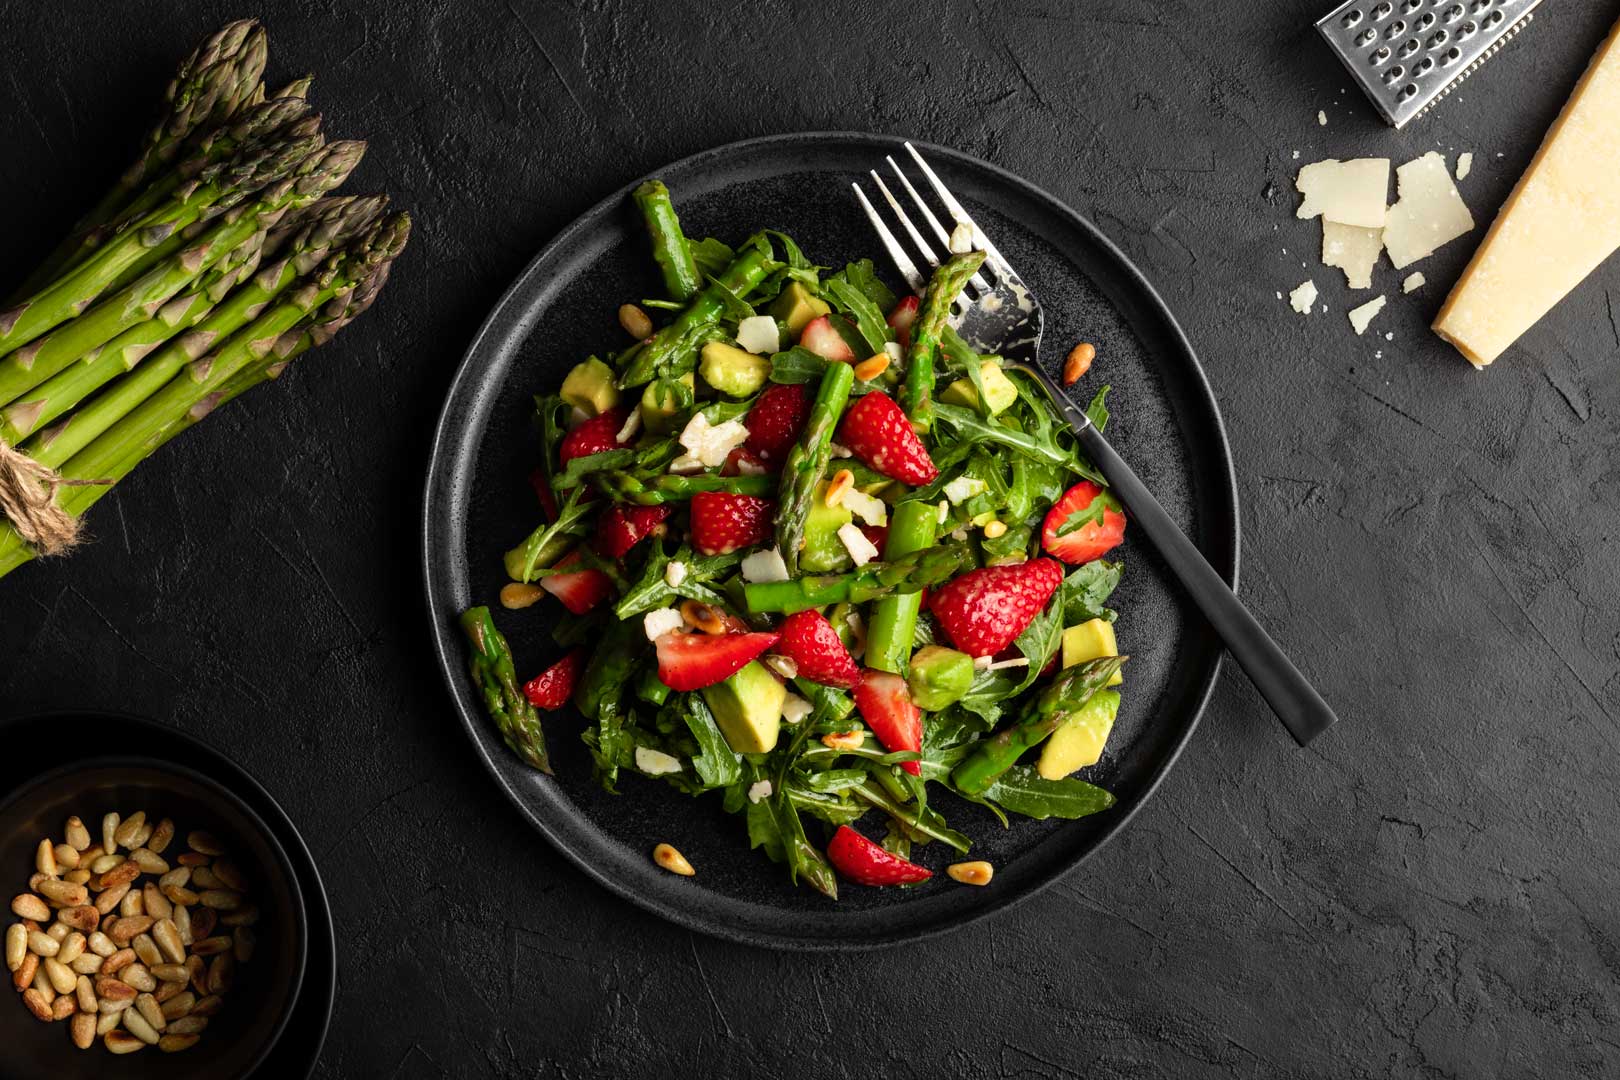 Grüner Spargel-Salat mit Erdbeeren und Avocado auf einem schwarzen Teller. Neben dem Salat liegen grüner Spargel, Parmesan und Pinienkerne.